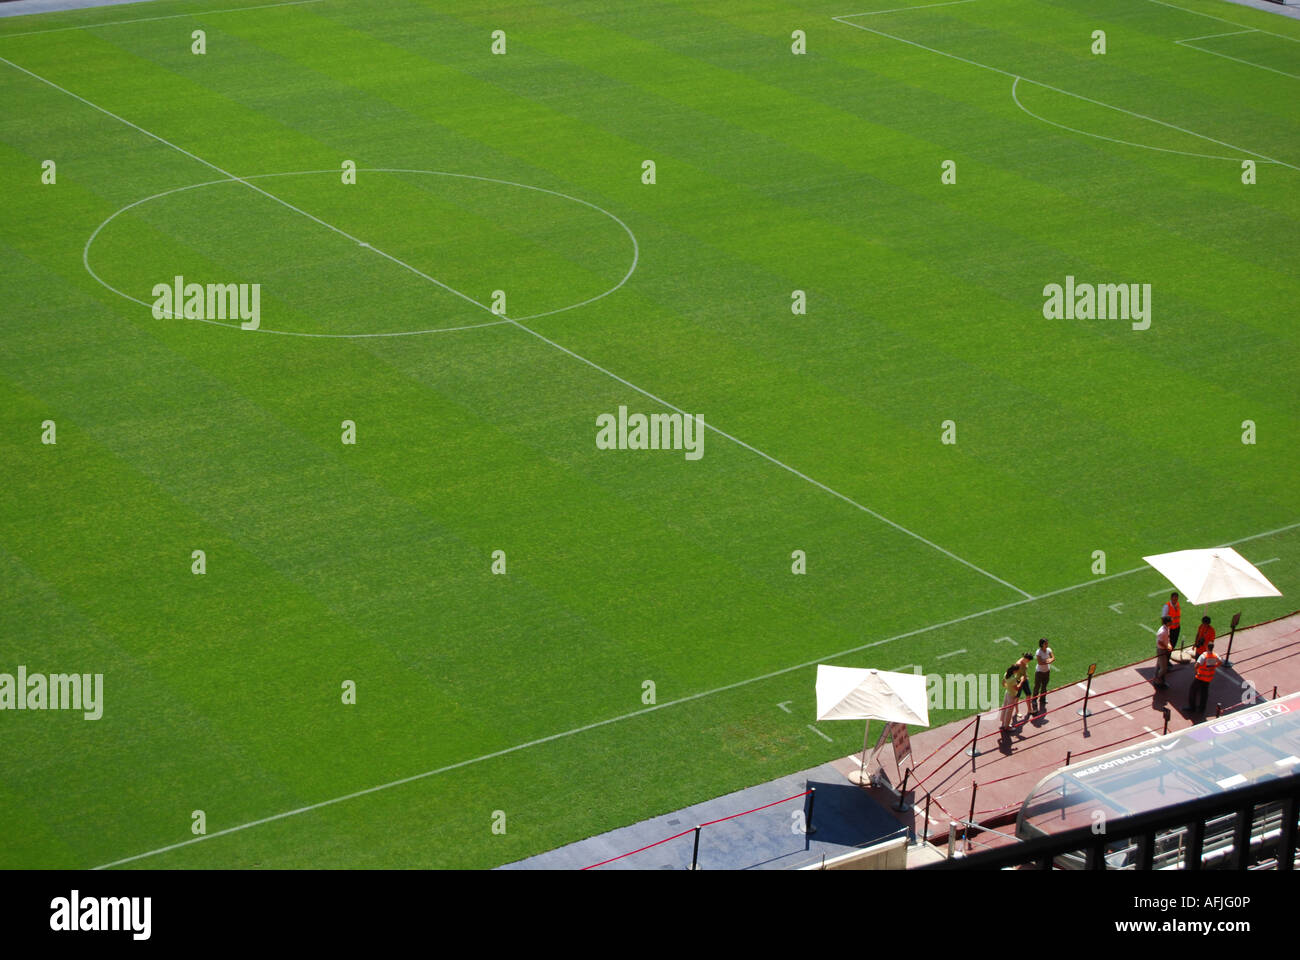 Détail de pelouses de stade de football de Barcelone Espagne Banque D'Images